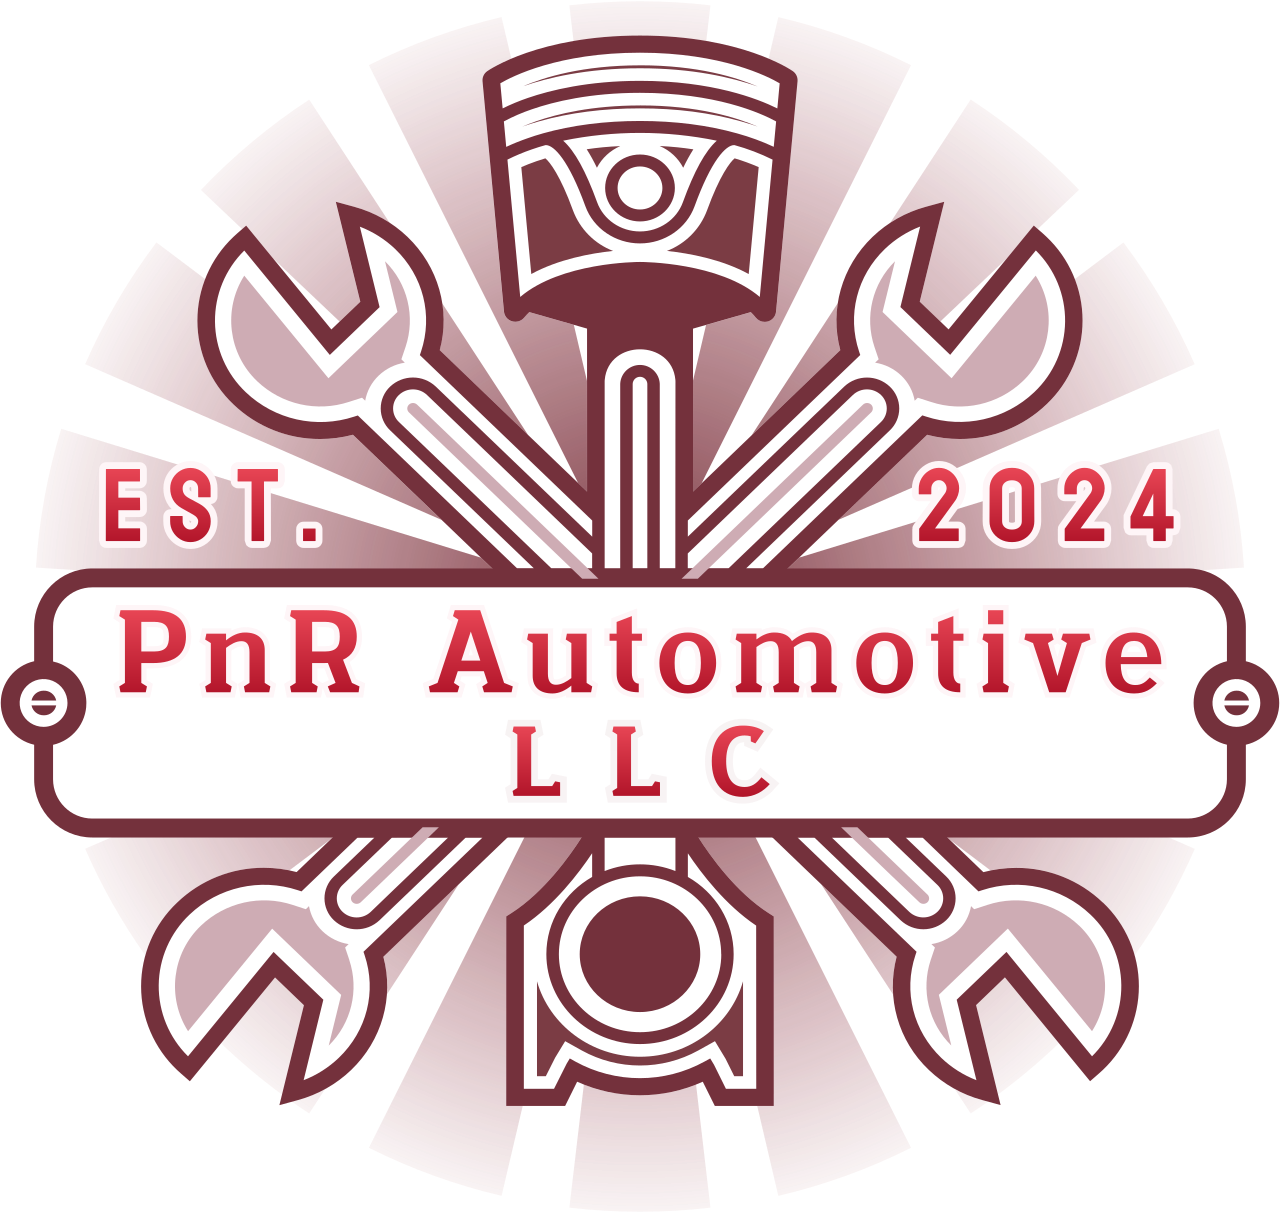 PnR Automotive's logo